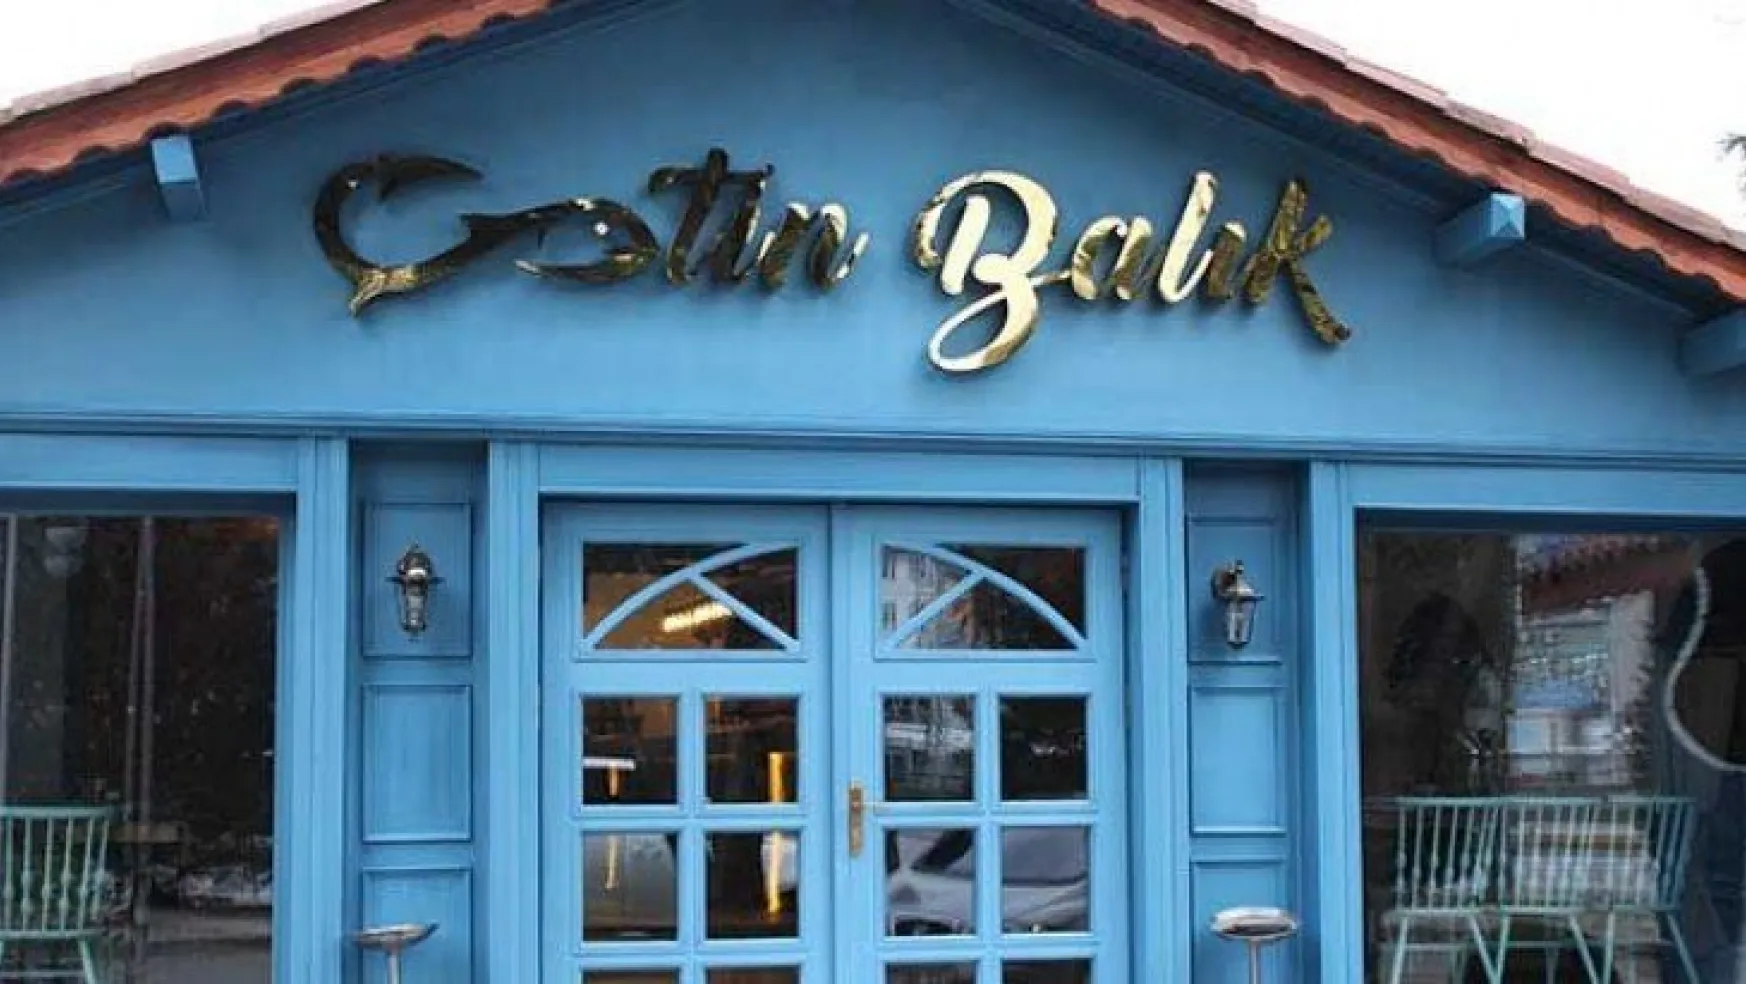 Balığın yeni adresi Çetin Balık Restoran